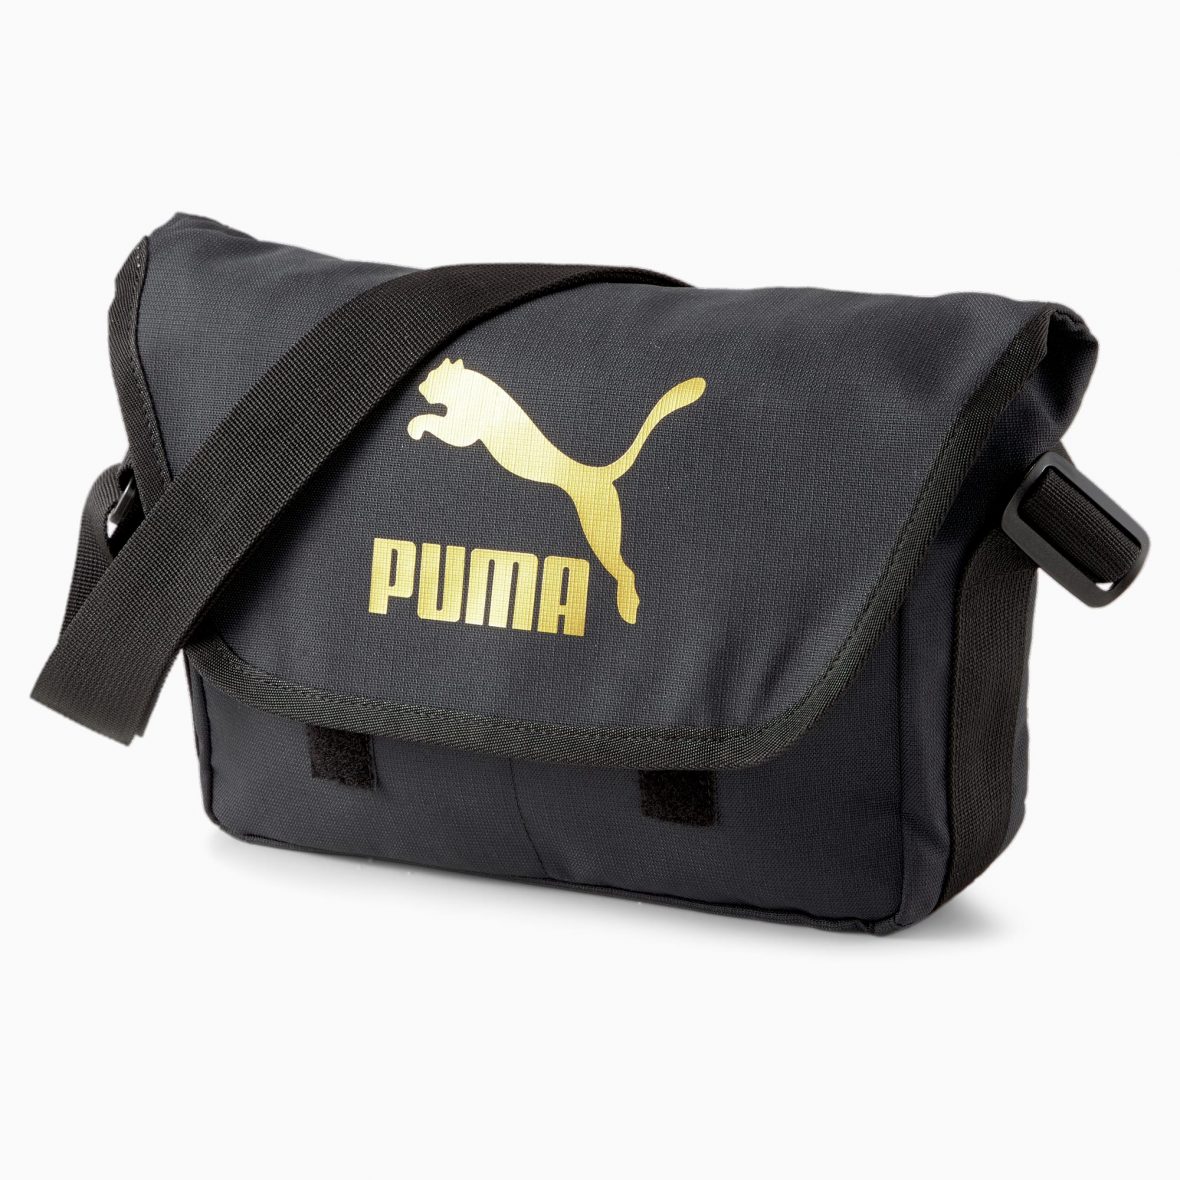 Puma 078007 Originals Urban Messenger Bag